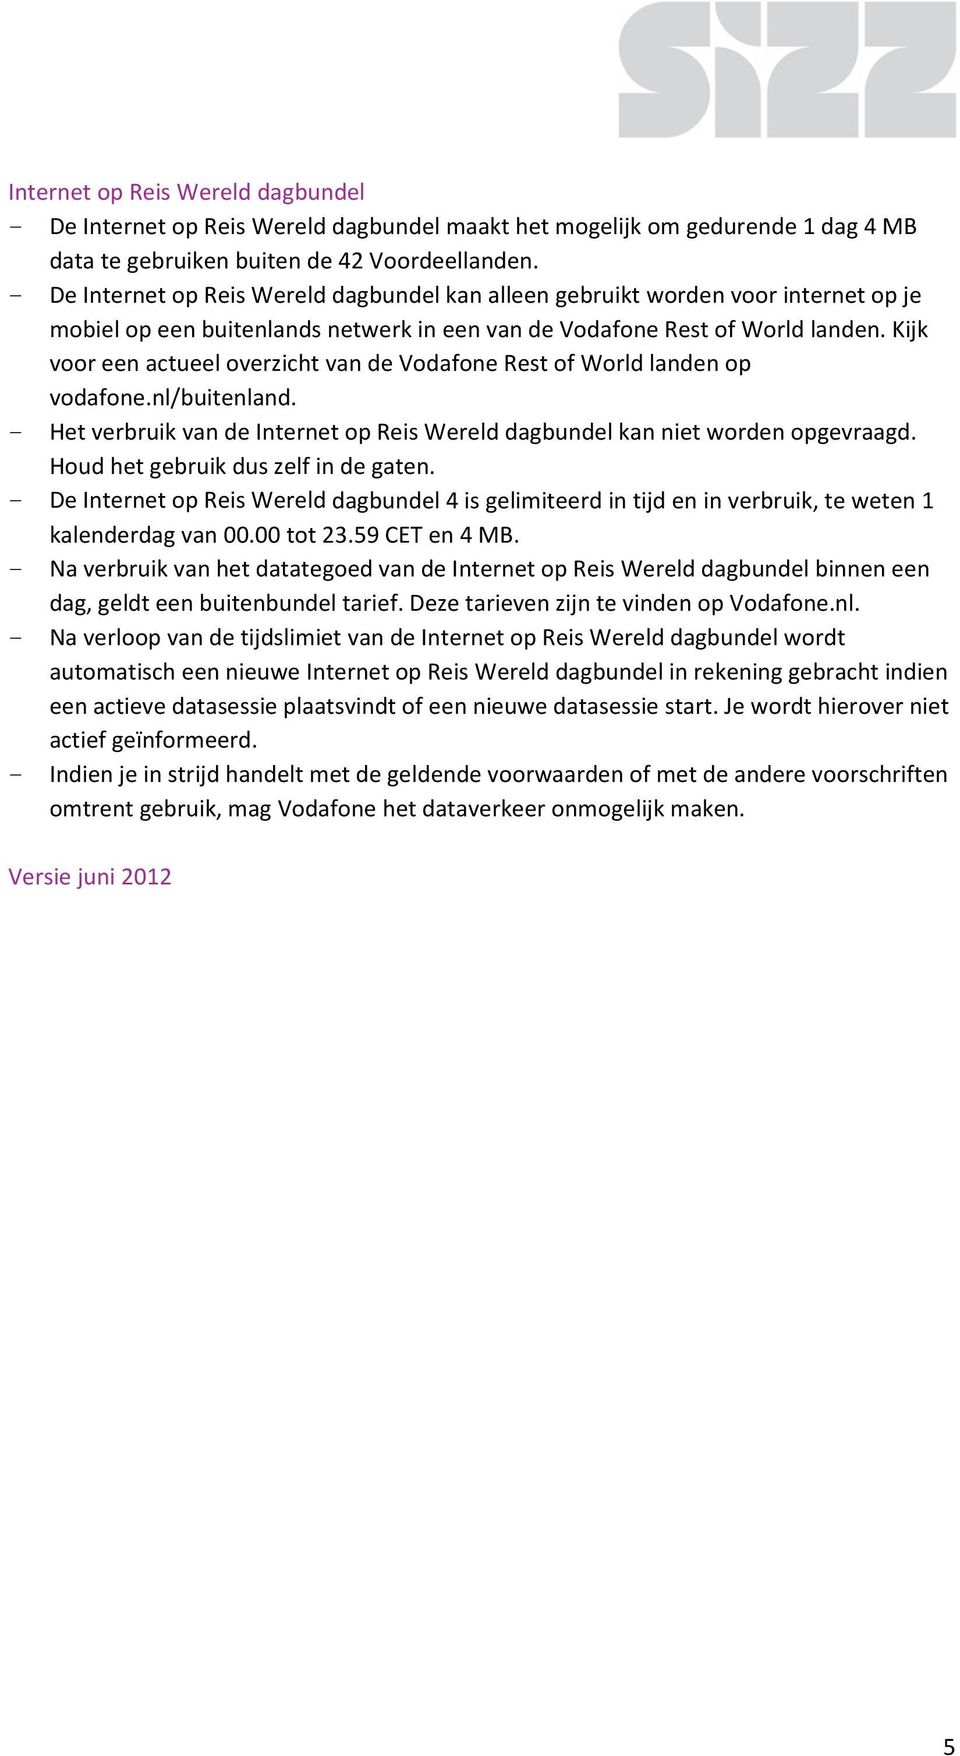 Kijk voor een actueel overzicht van de Vodafone Rest of World landen op vodafone.nl/buitenland. - Het verbruik van de Internet op Reis Wereld dagbundel kan niet worden opgevraagd.